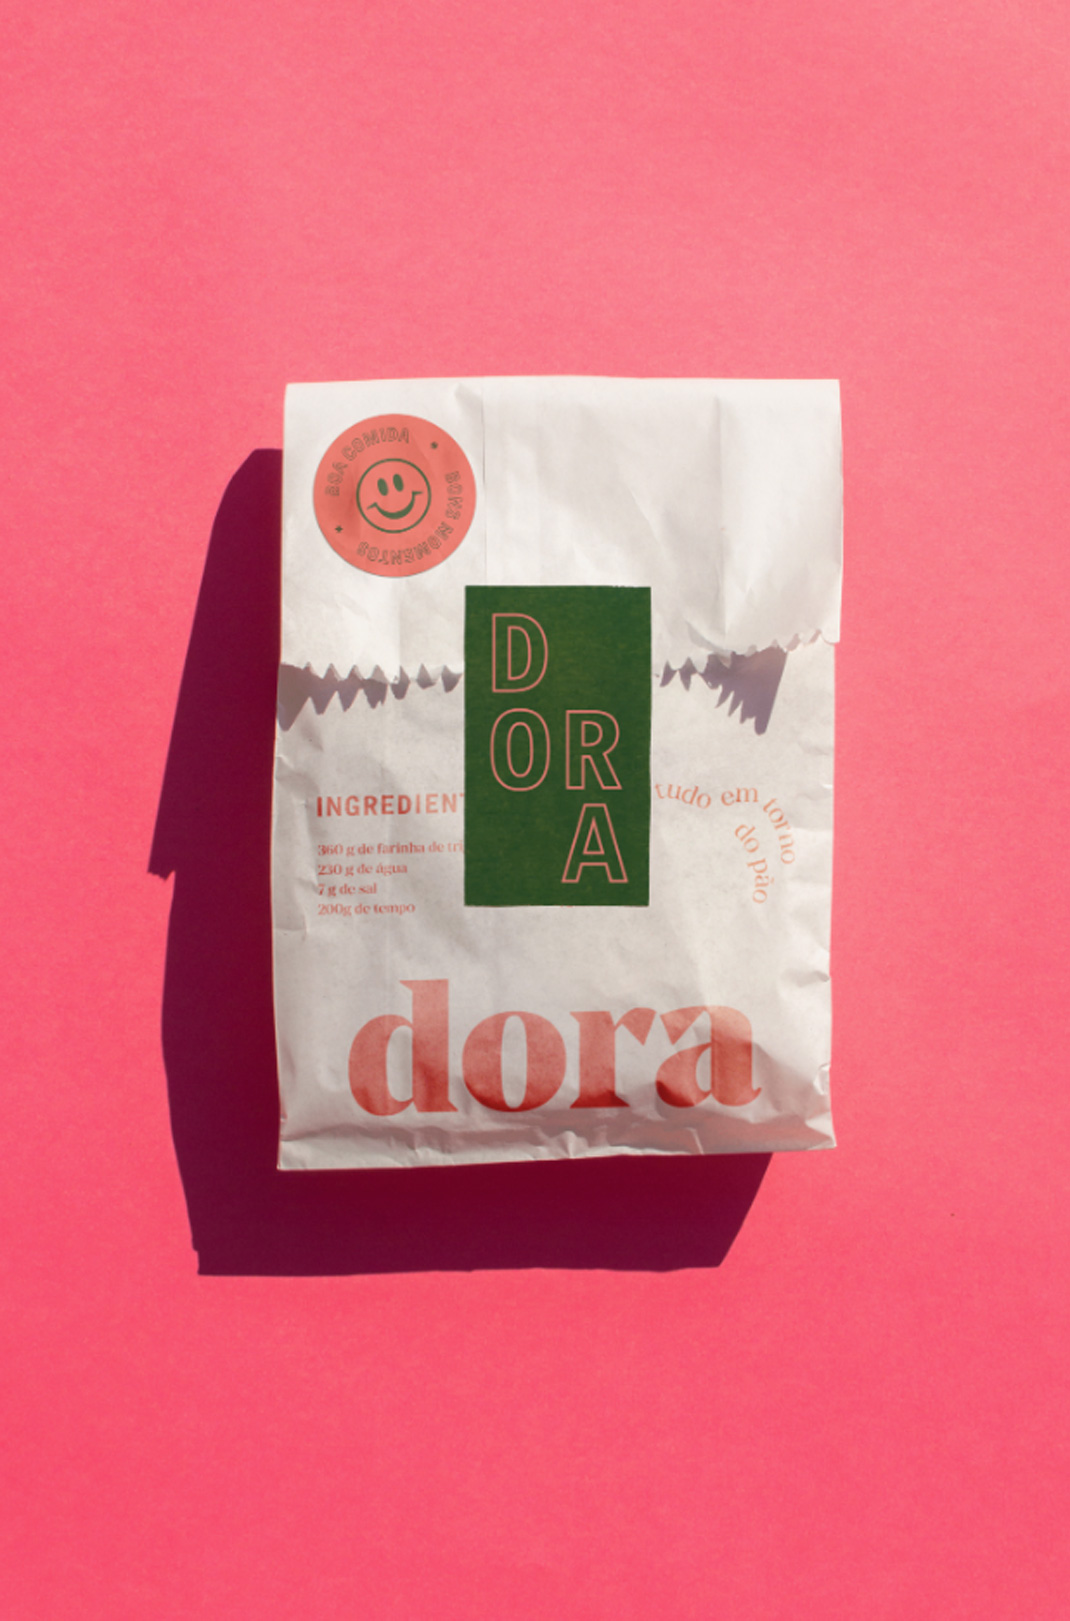 野生发酵面包店Dora 巴西 面包店 字体设计 插画设计 包装设计 logo设计 vi设计 空间设计